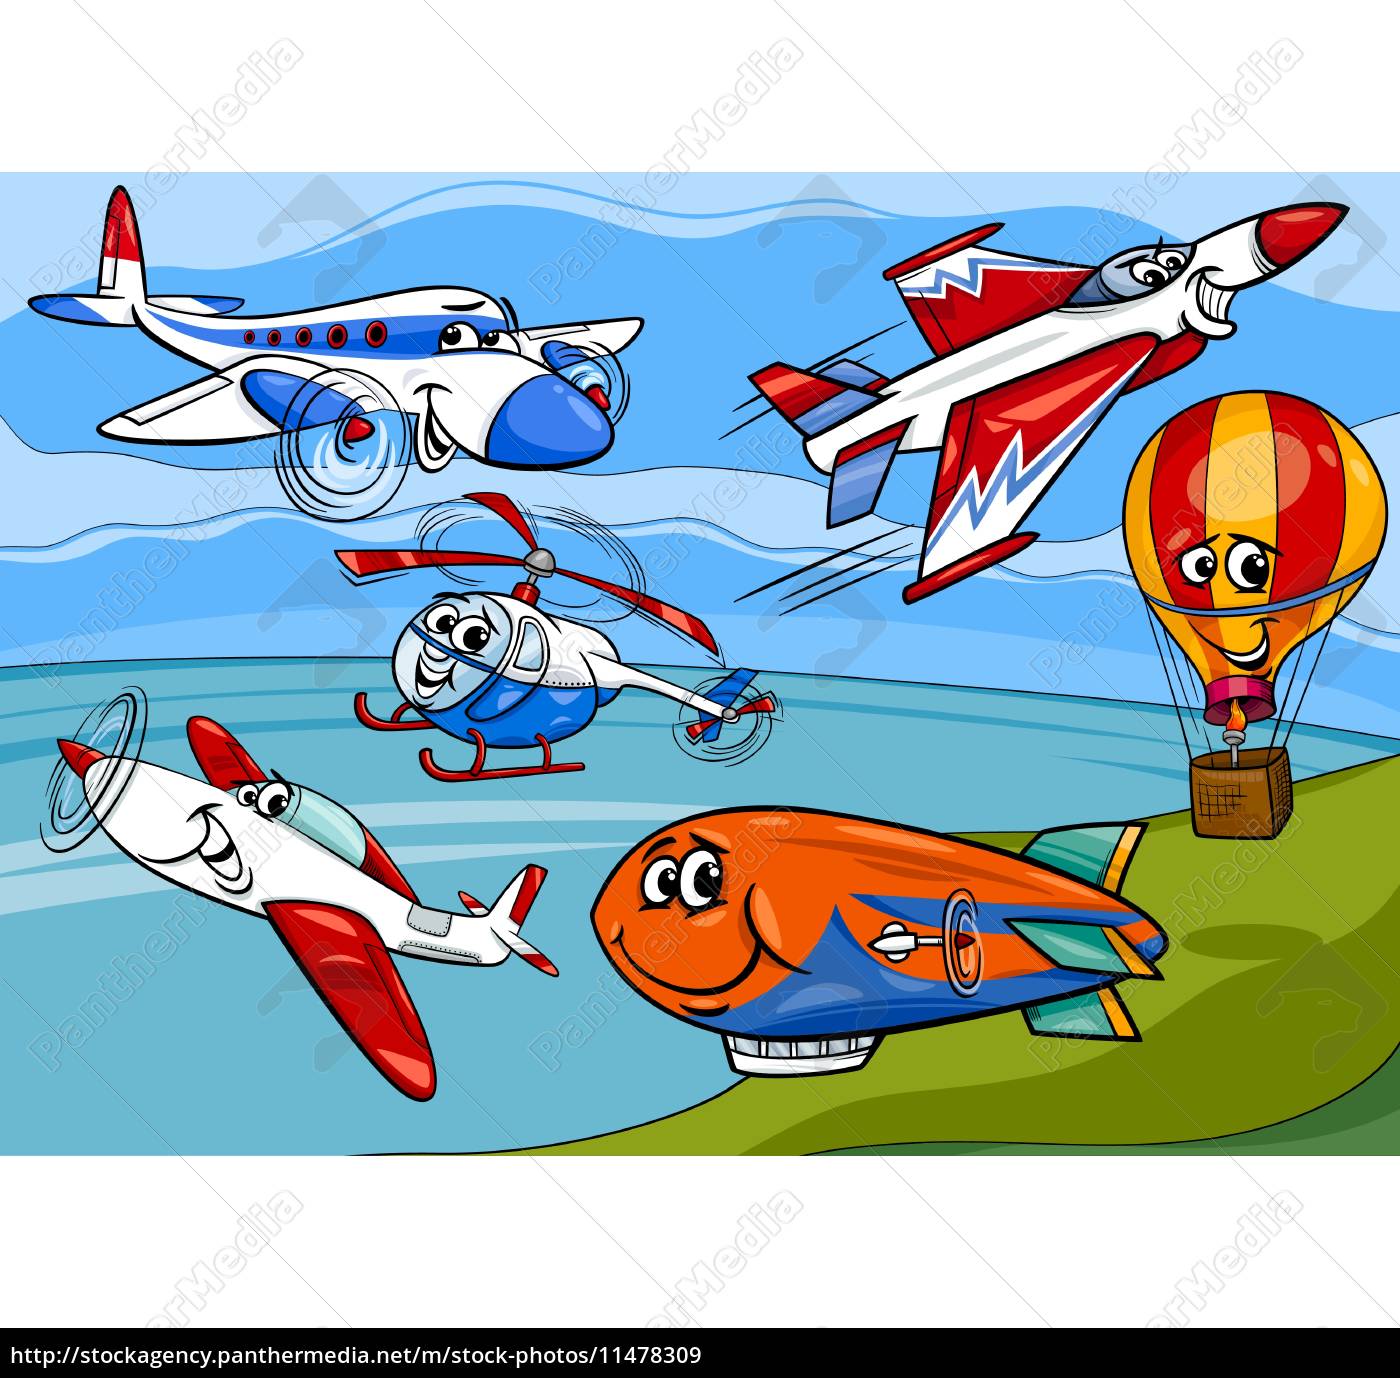 aviões avião grupo ilustração de desenho animado - Stockphoto #11478309